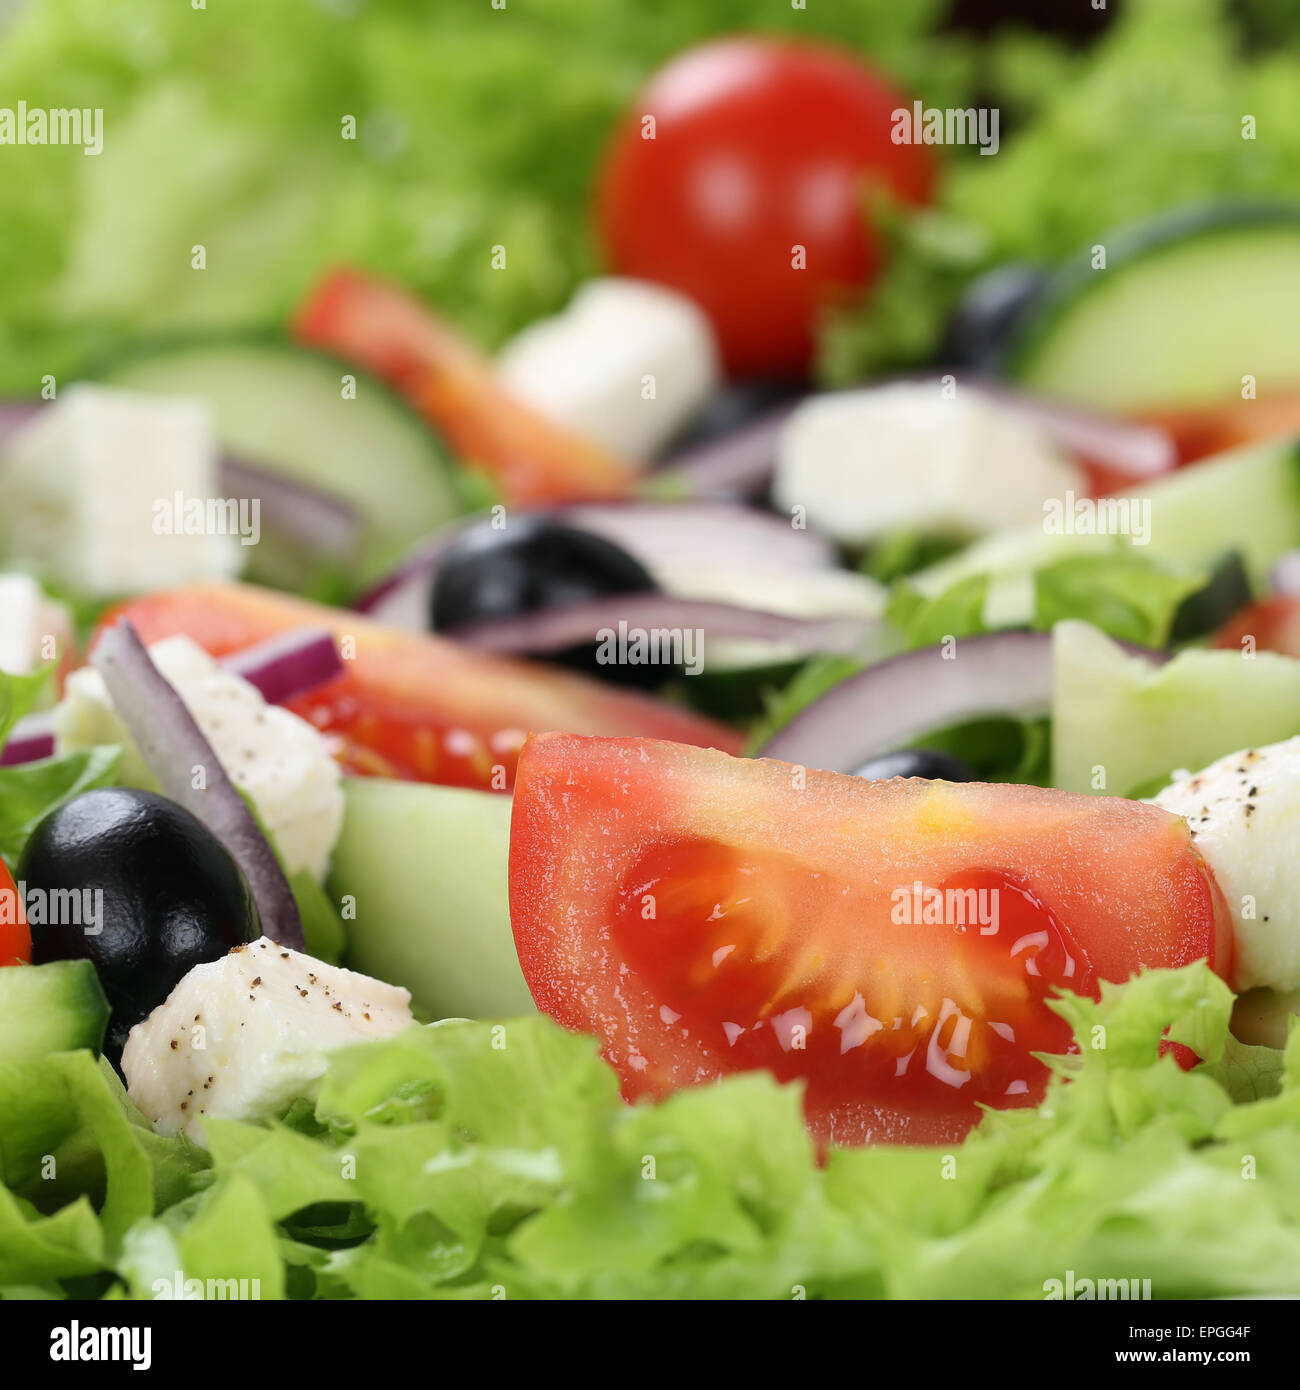 Griechischer Salat mit Tomaten, Käse und Oliven Nahaufnahme Stock Photo